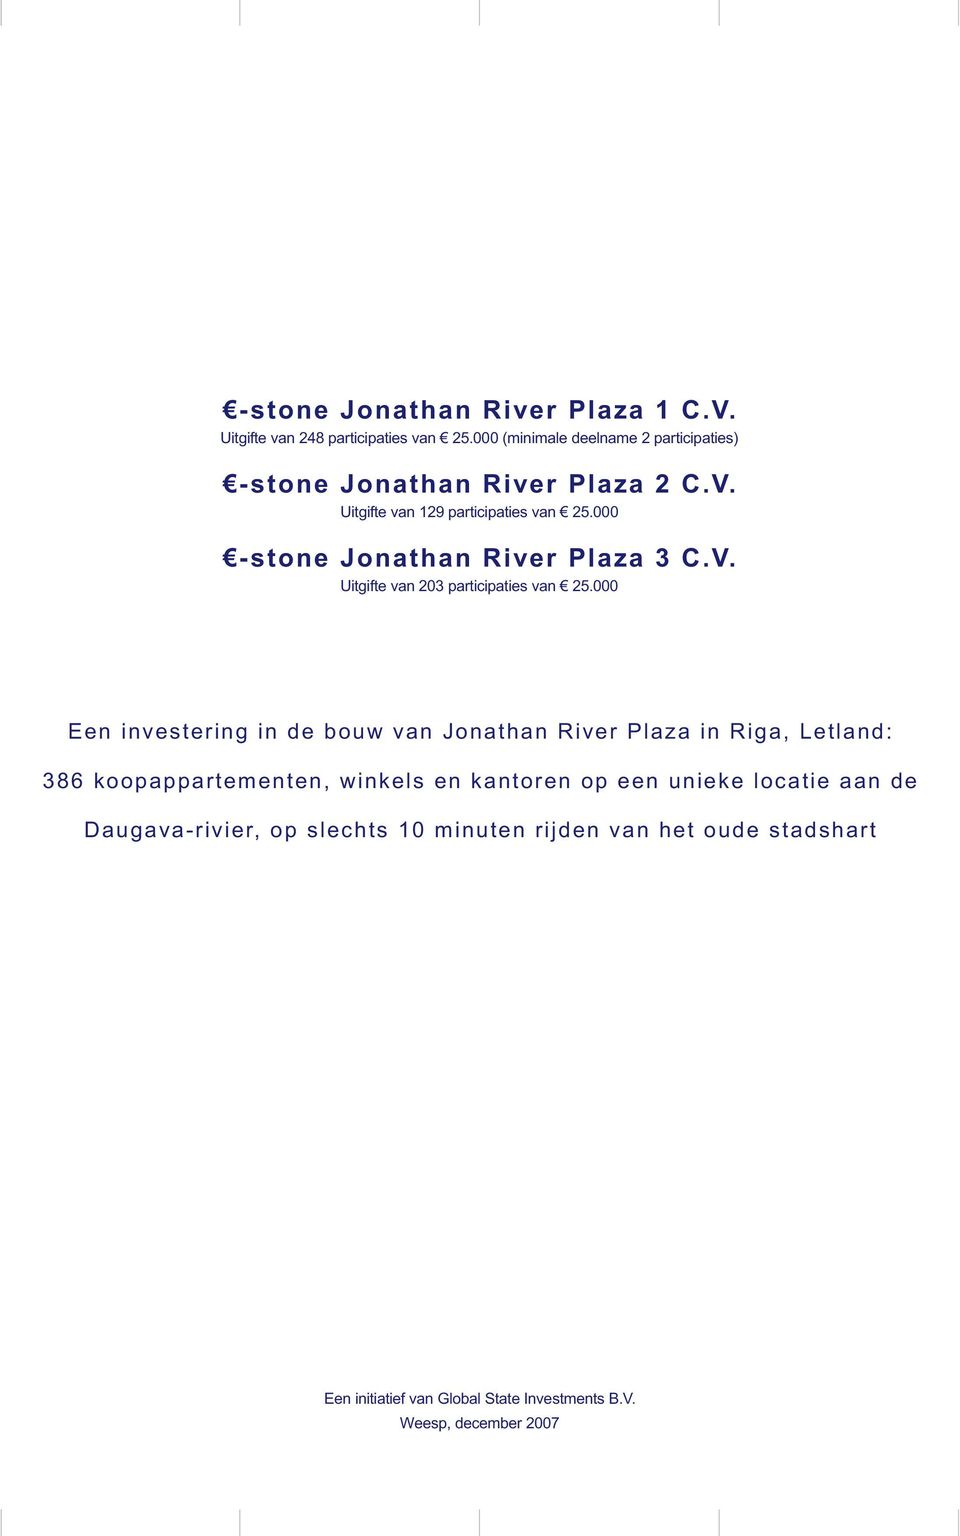 000 -stone Jonathan River Plaza 3 C.V. Uitgifte van 203 participaties van 25.